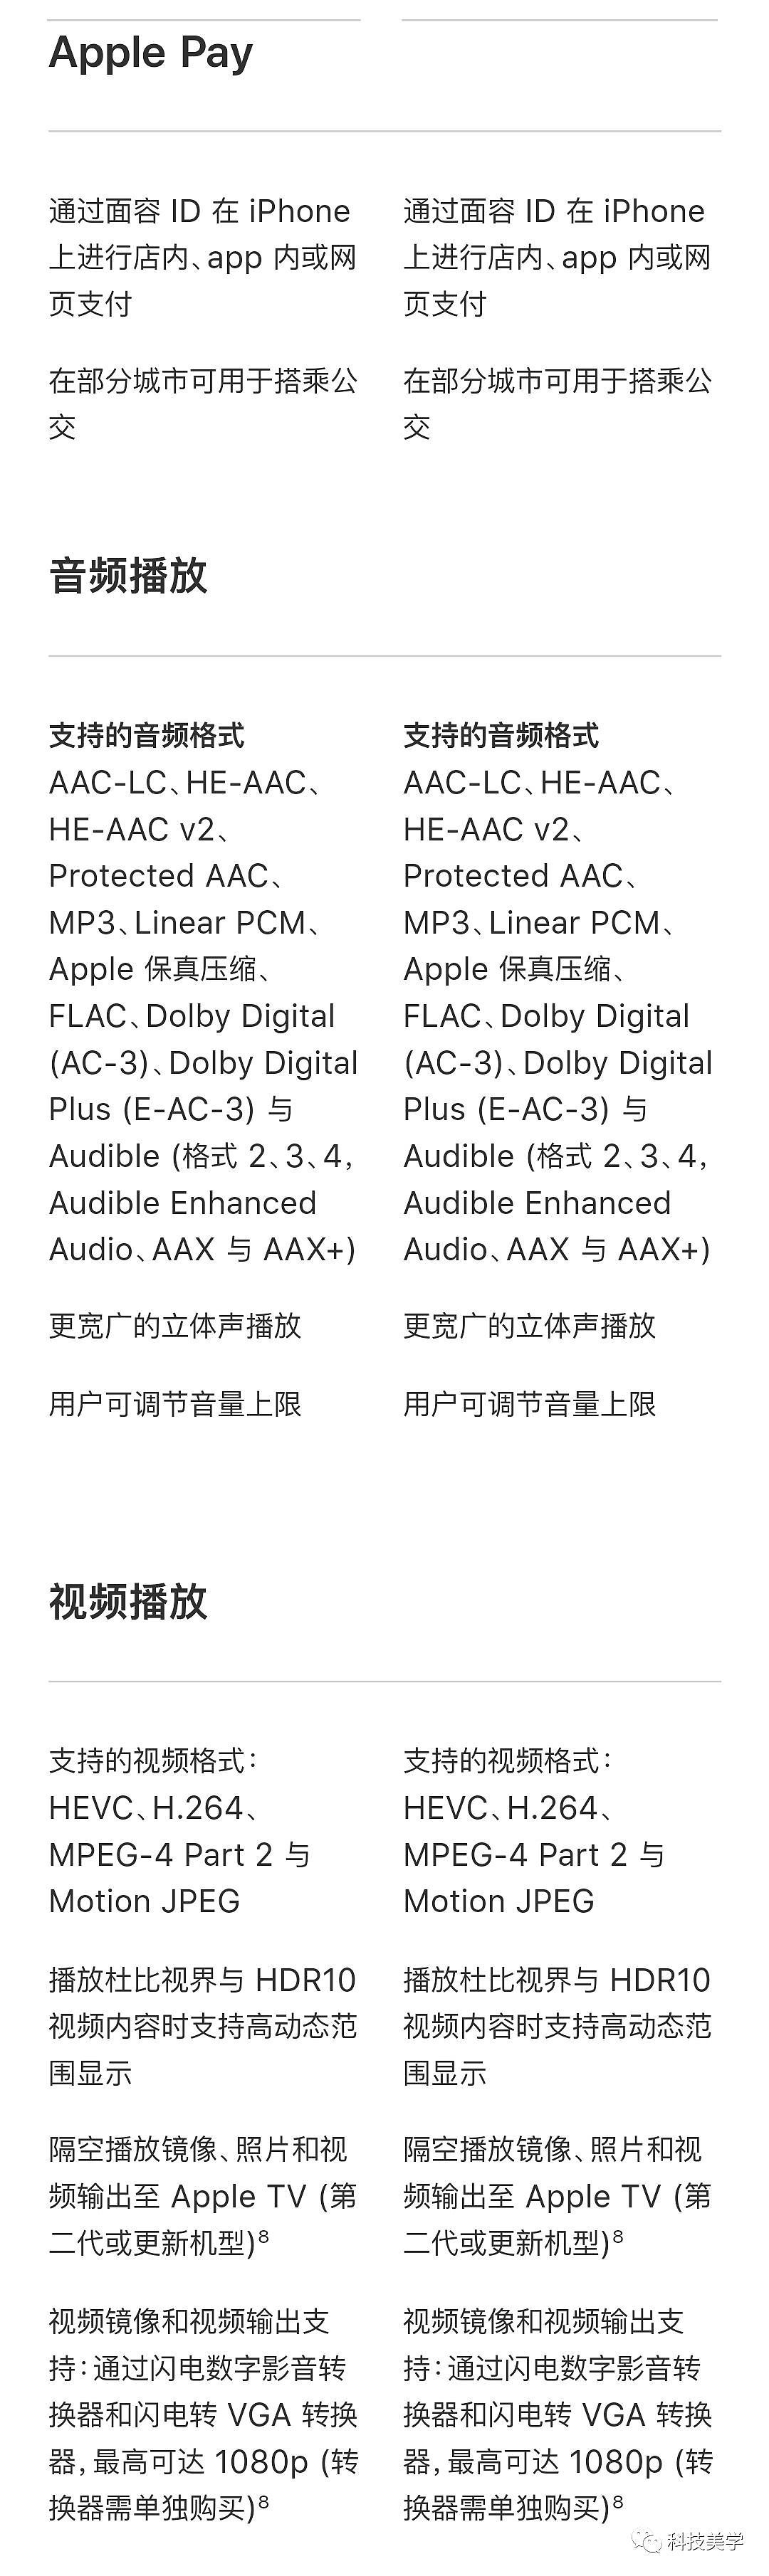 一张图看iphoneXs和iPhone Xs Max详细规格对比 - 5